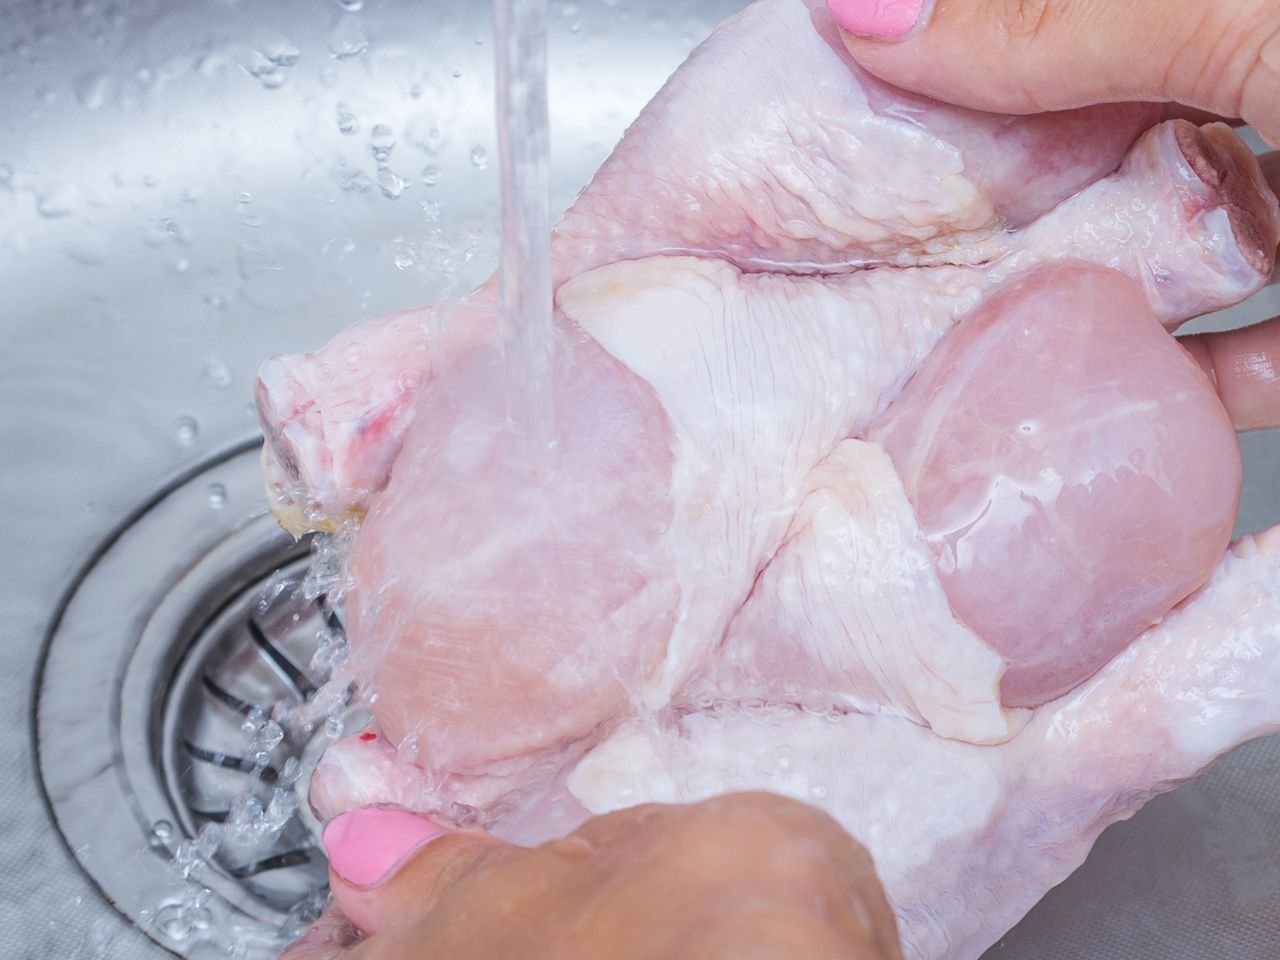 Myjesz mięso przed gotowaniem? To błąd!